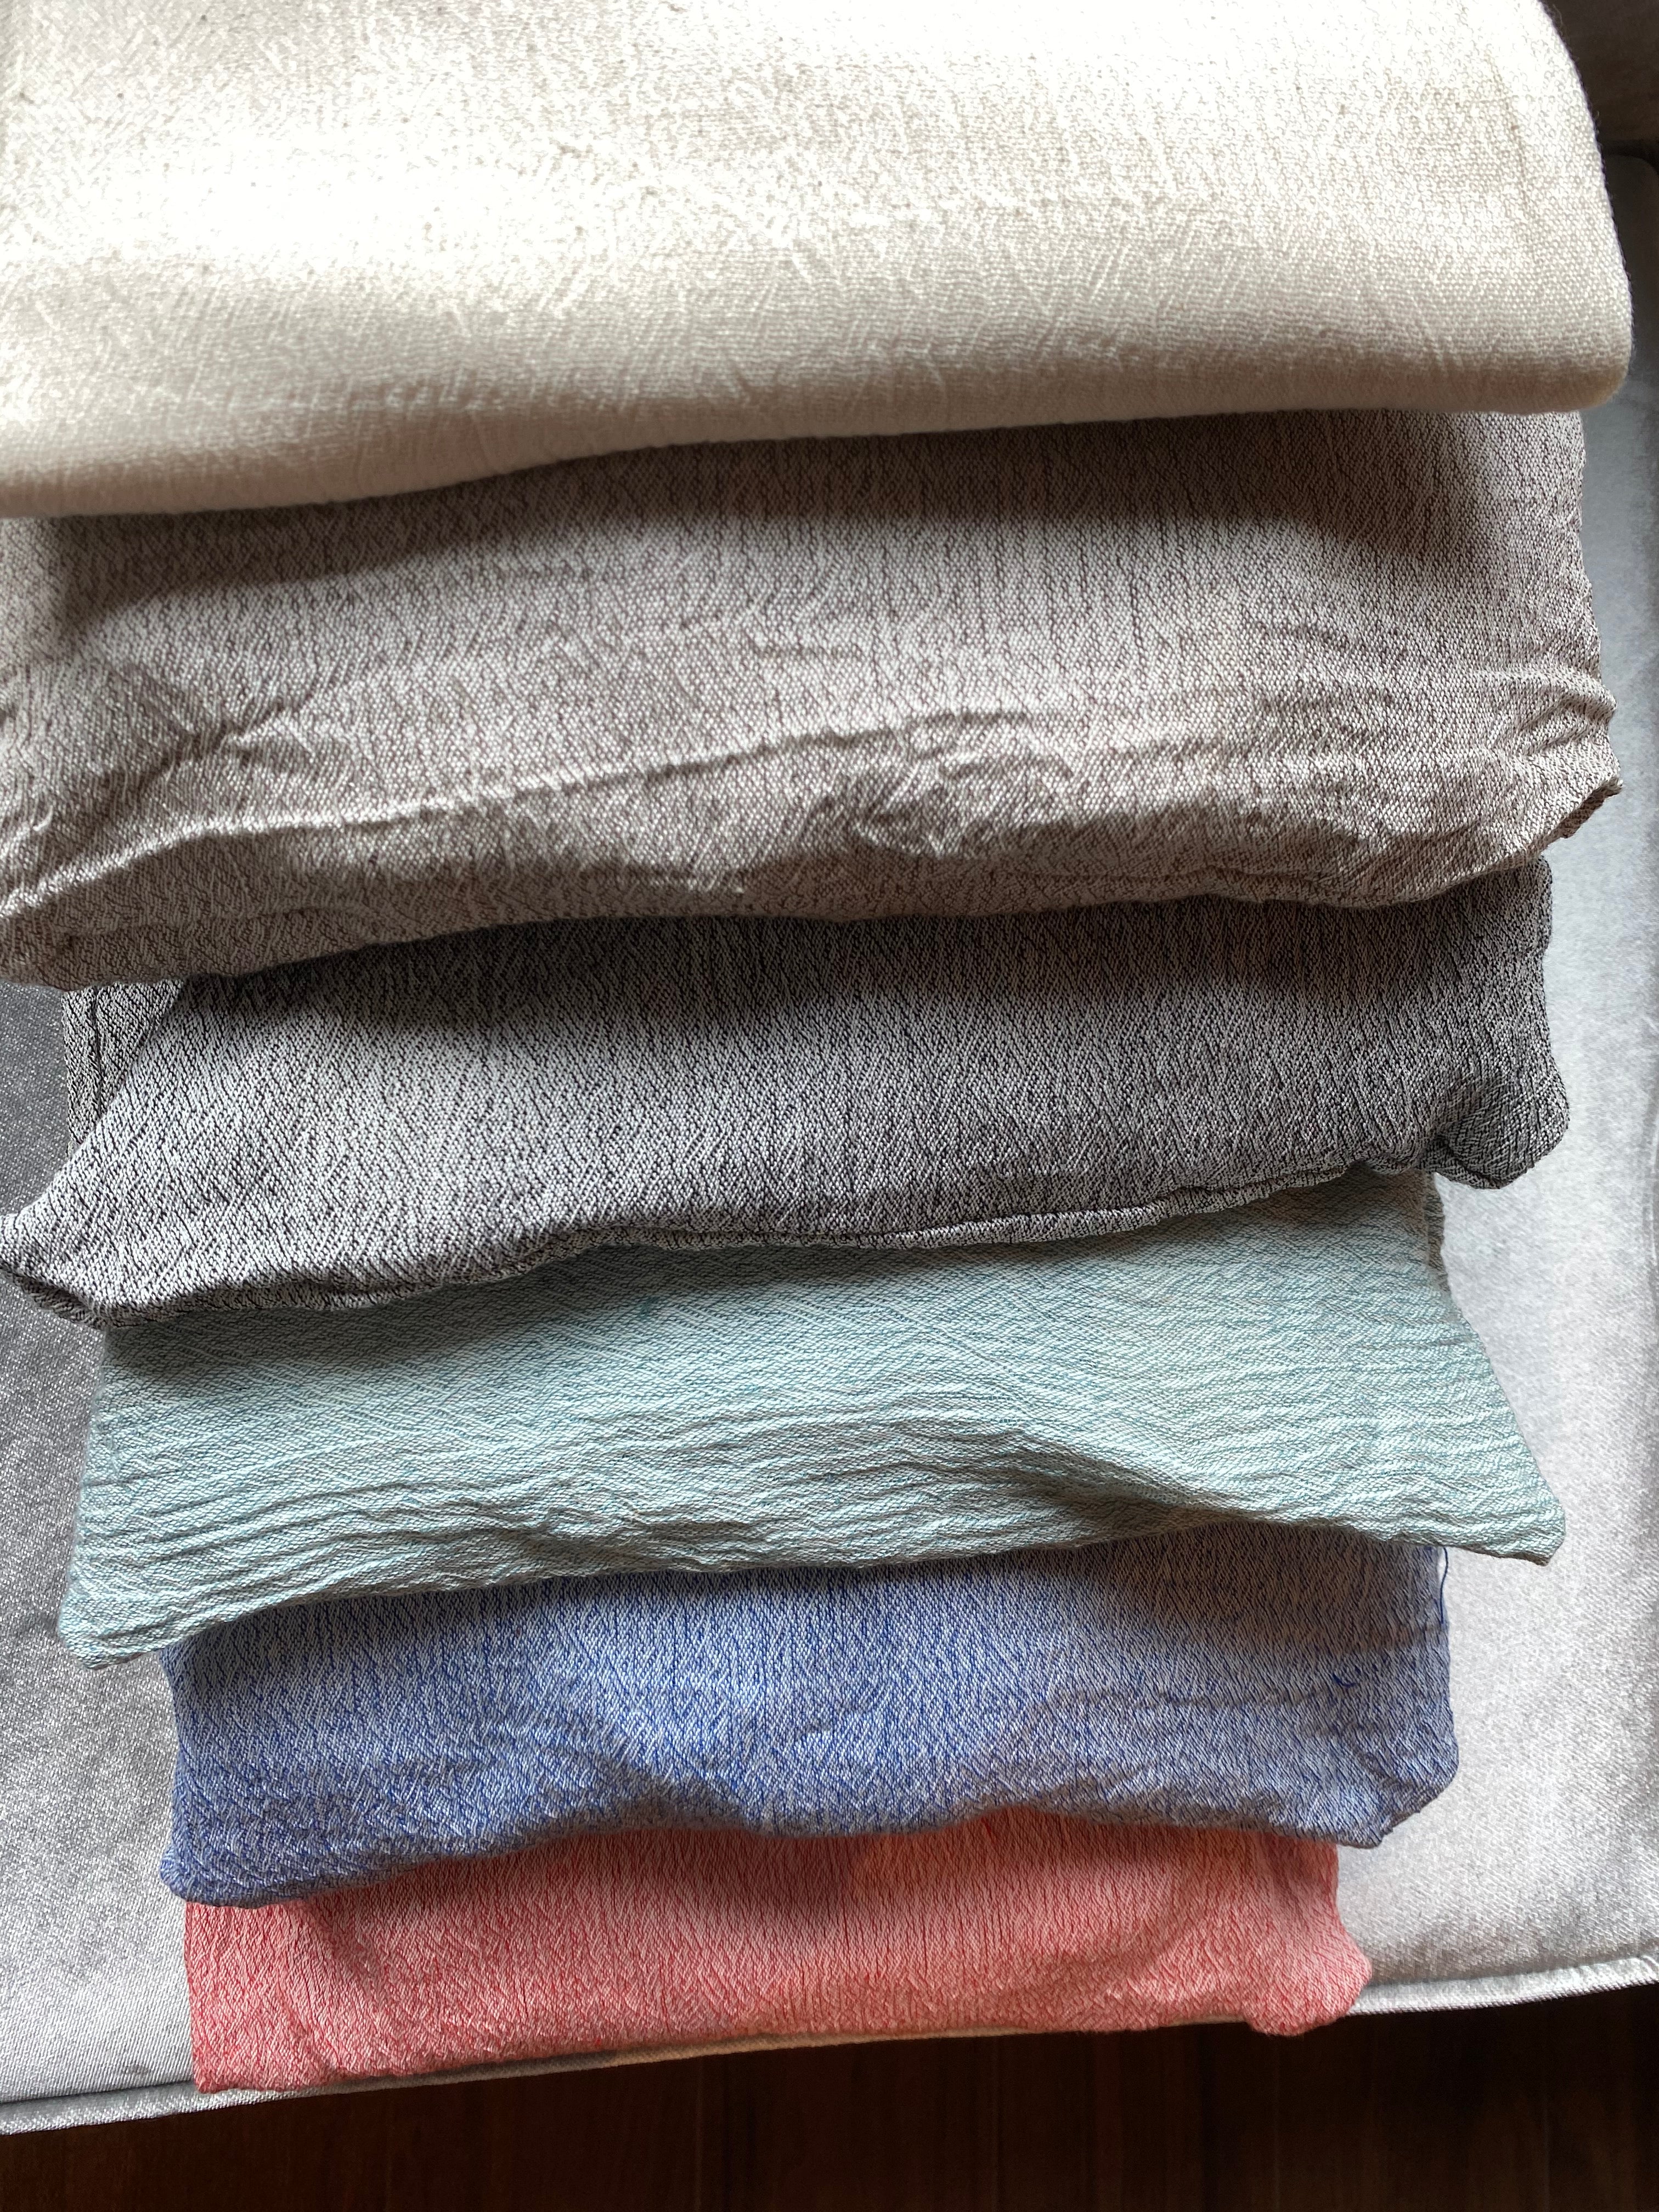 100% Cotton Sile Cloth 6 Piece Duvet Cover Set